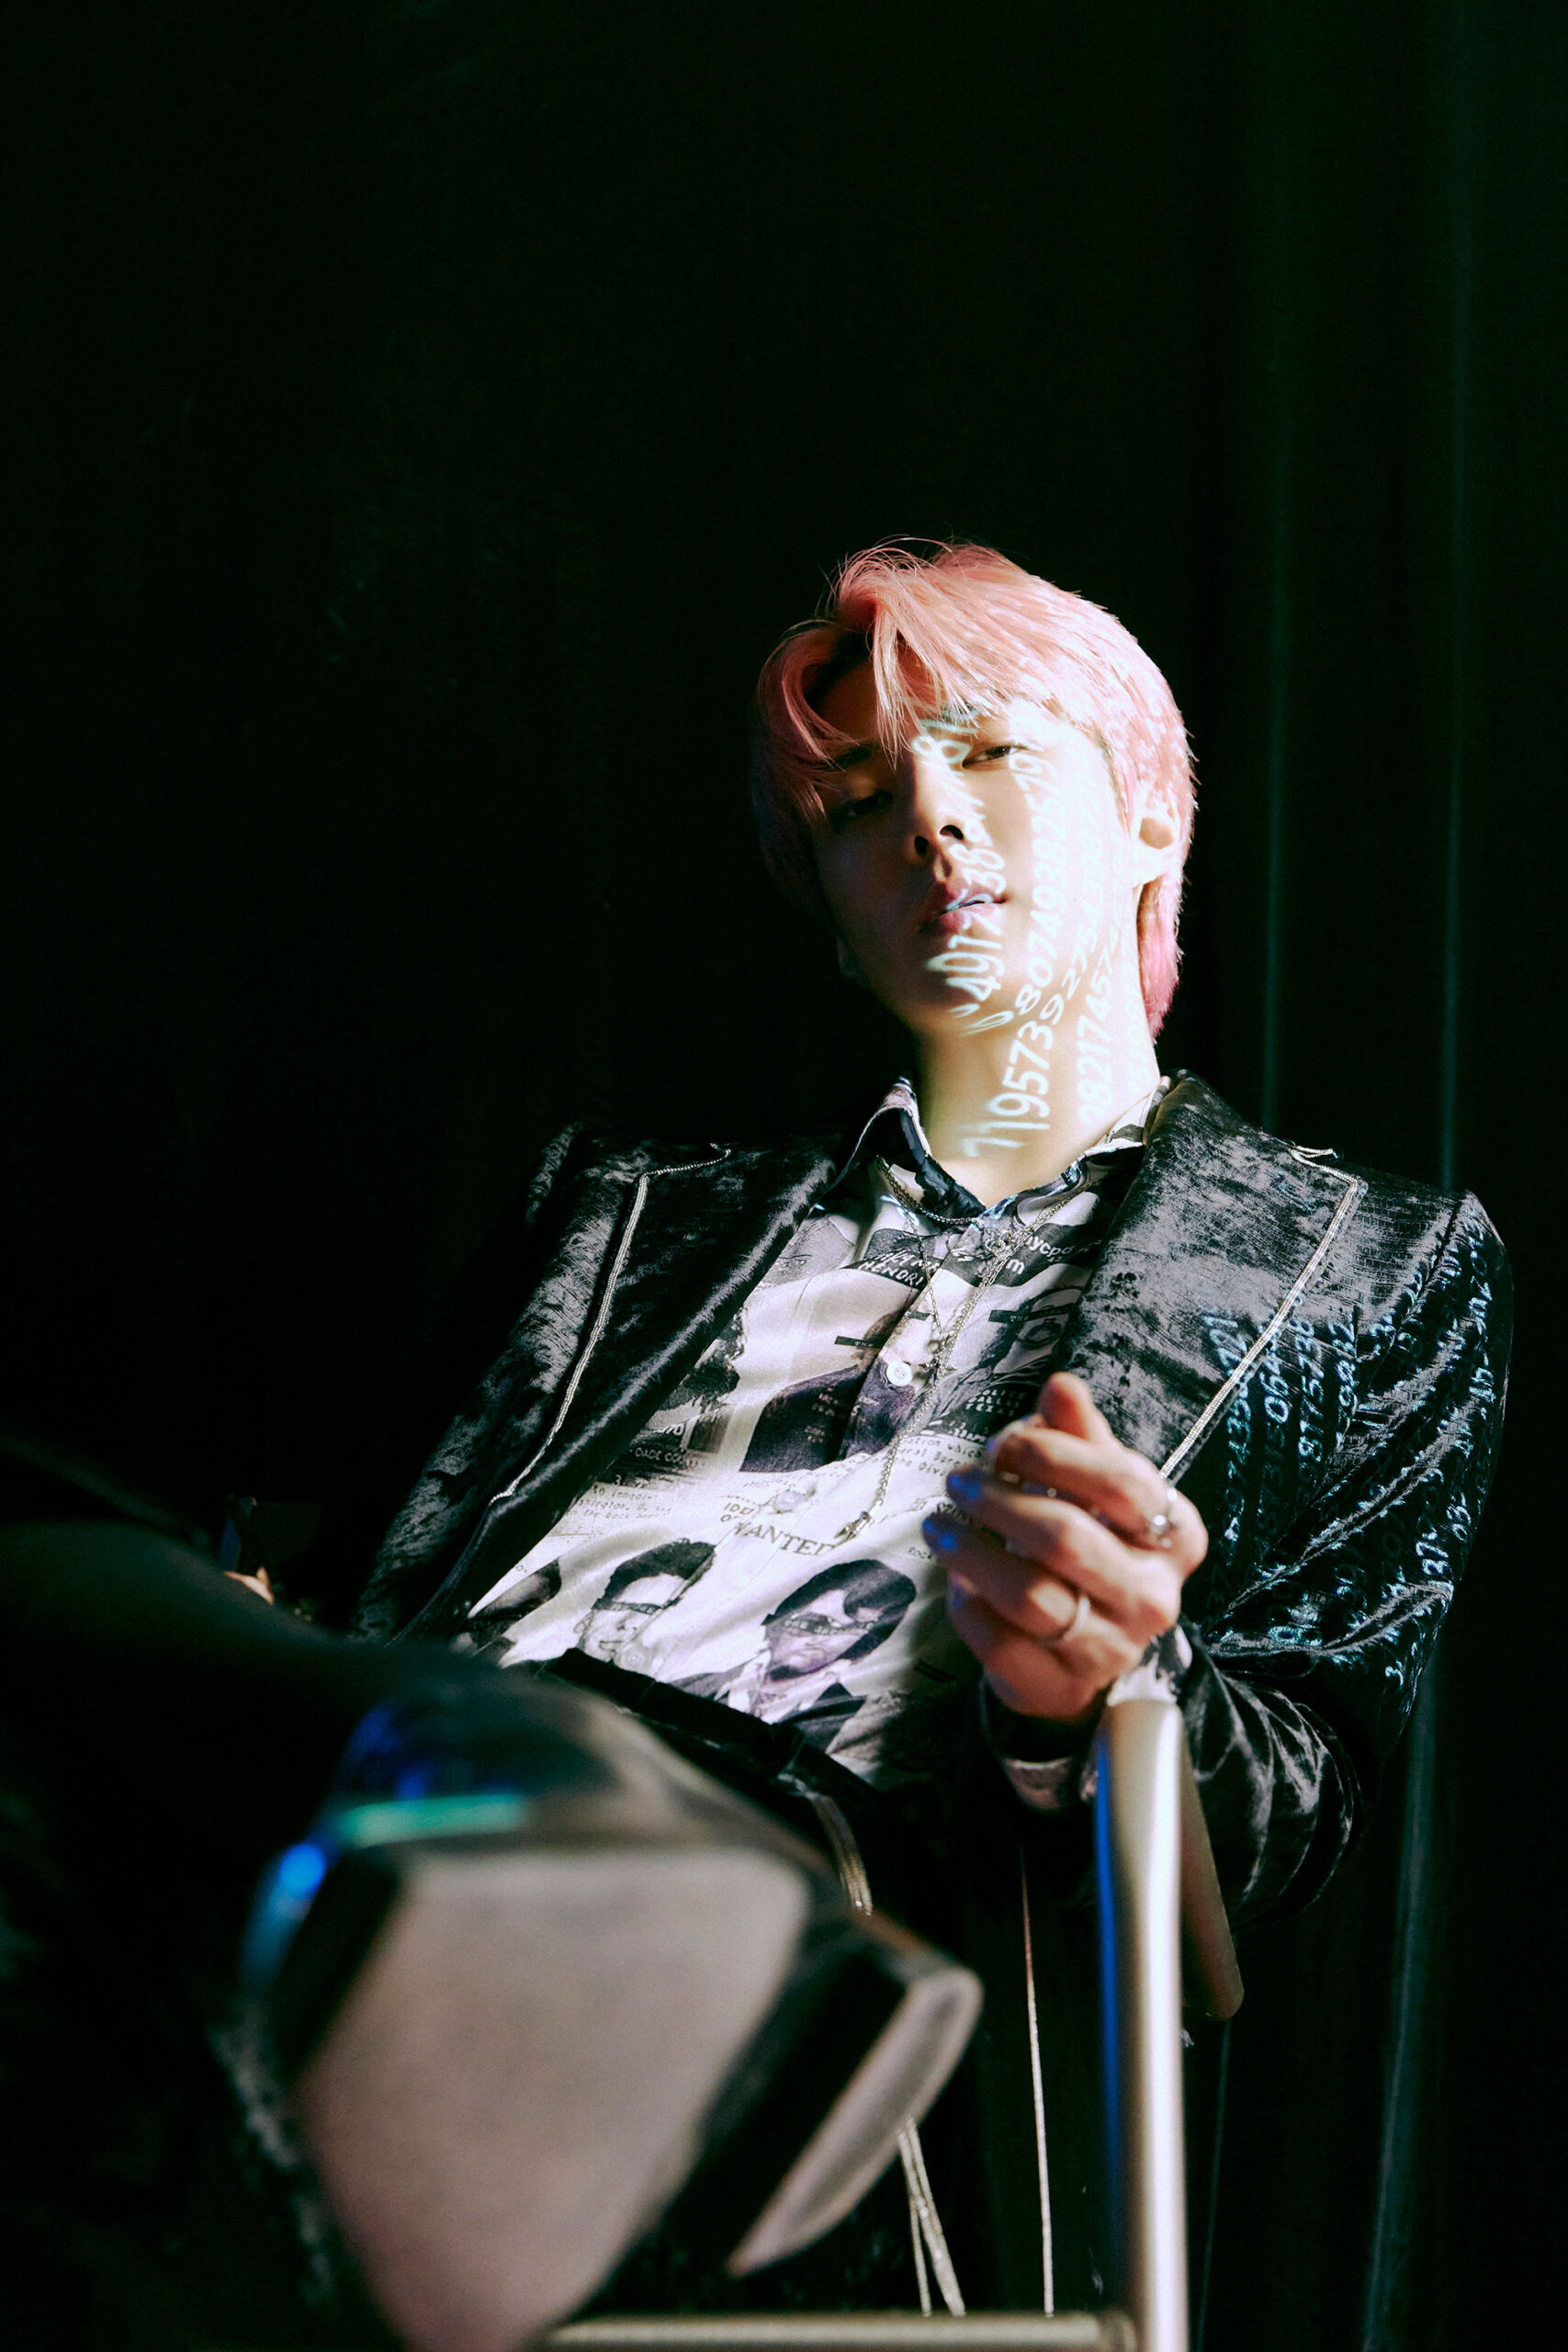 exo-sehun-pink-hair-teaser-image-1-billion-views-3